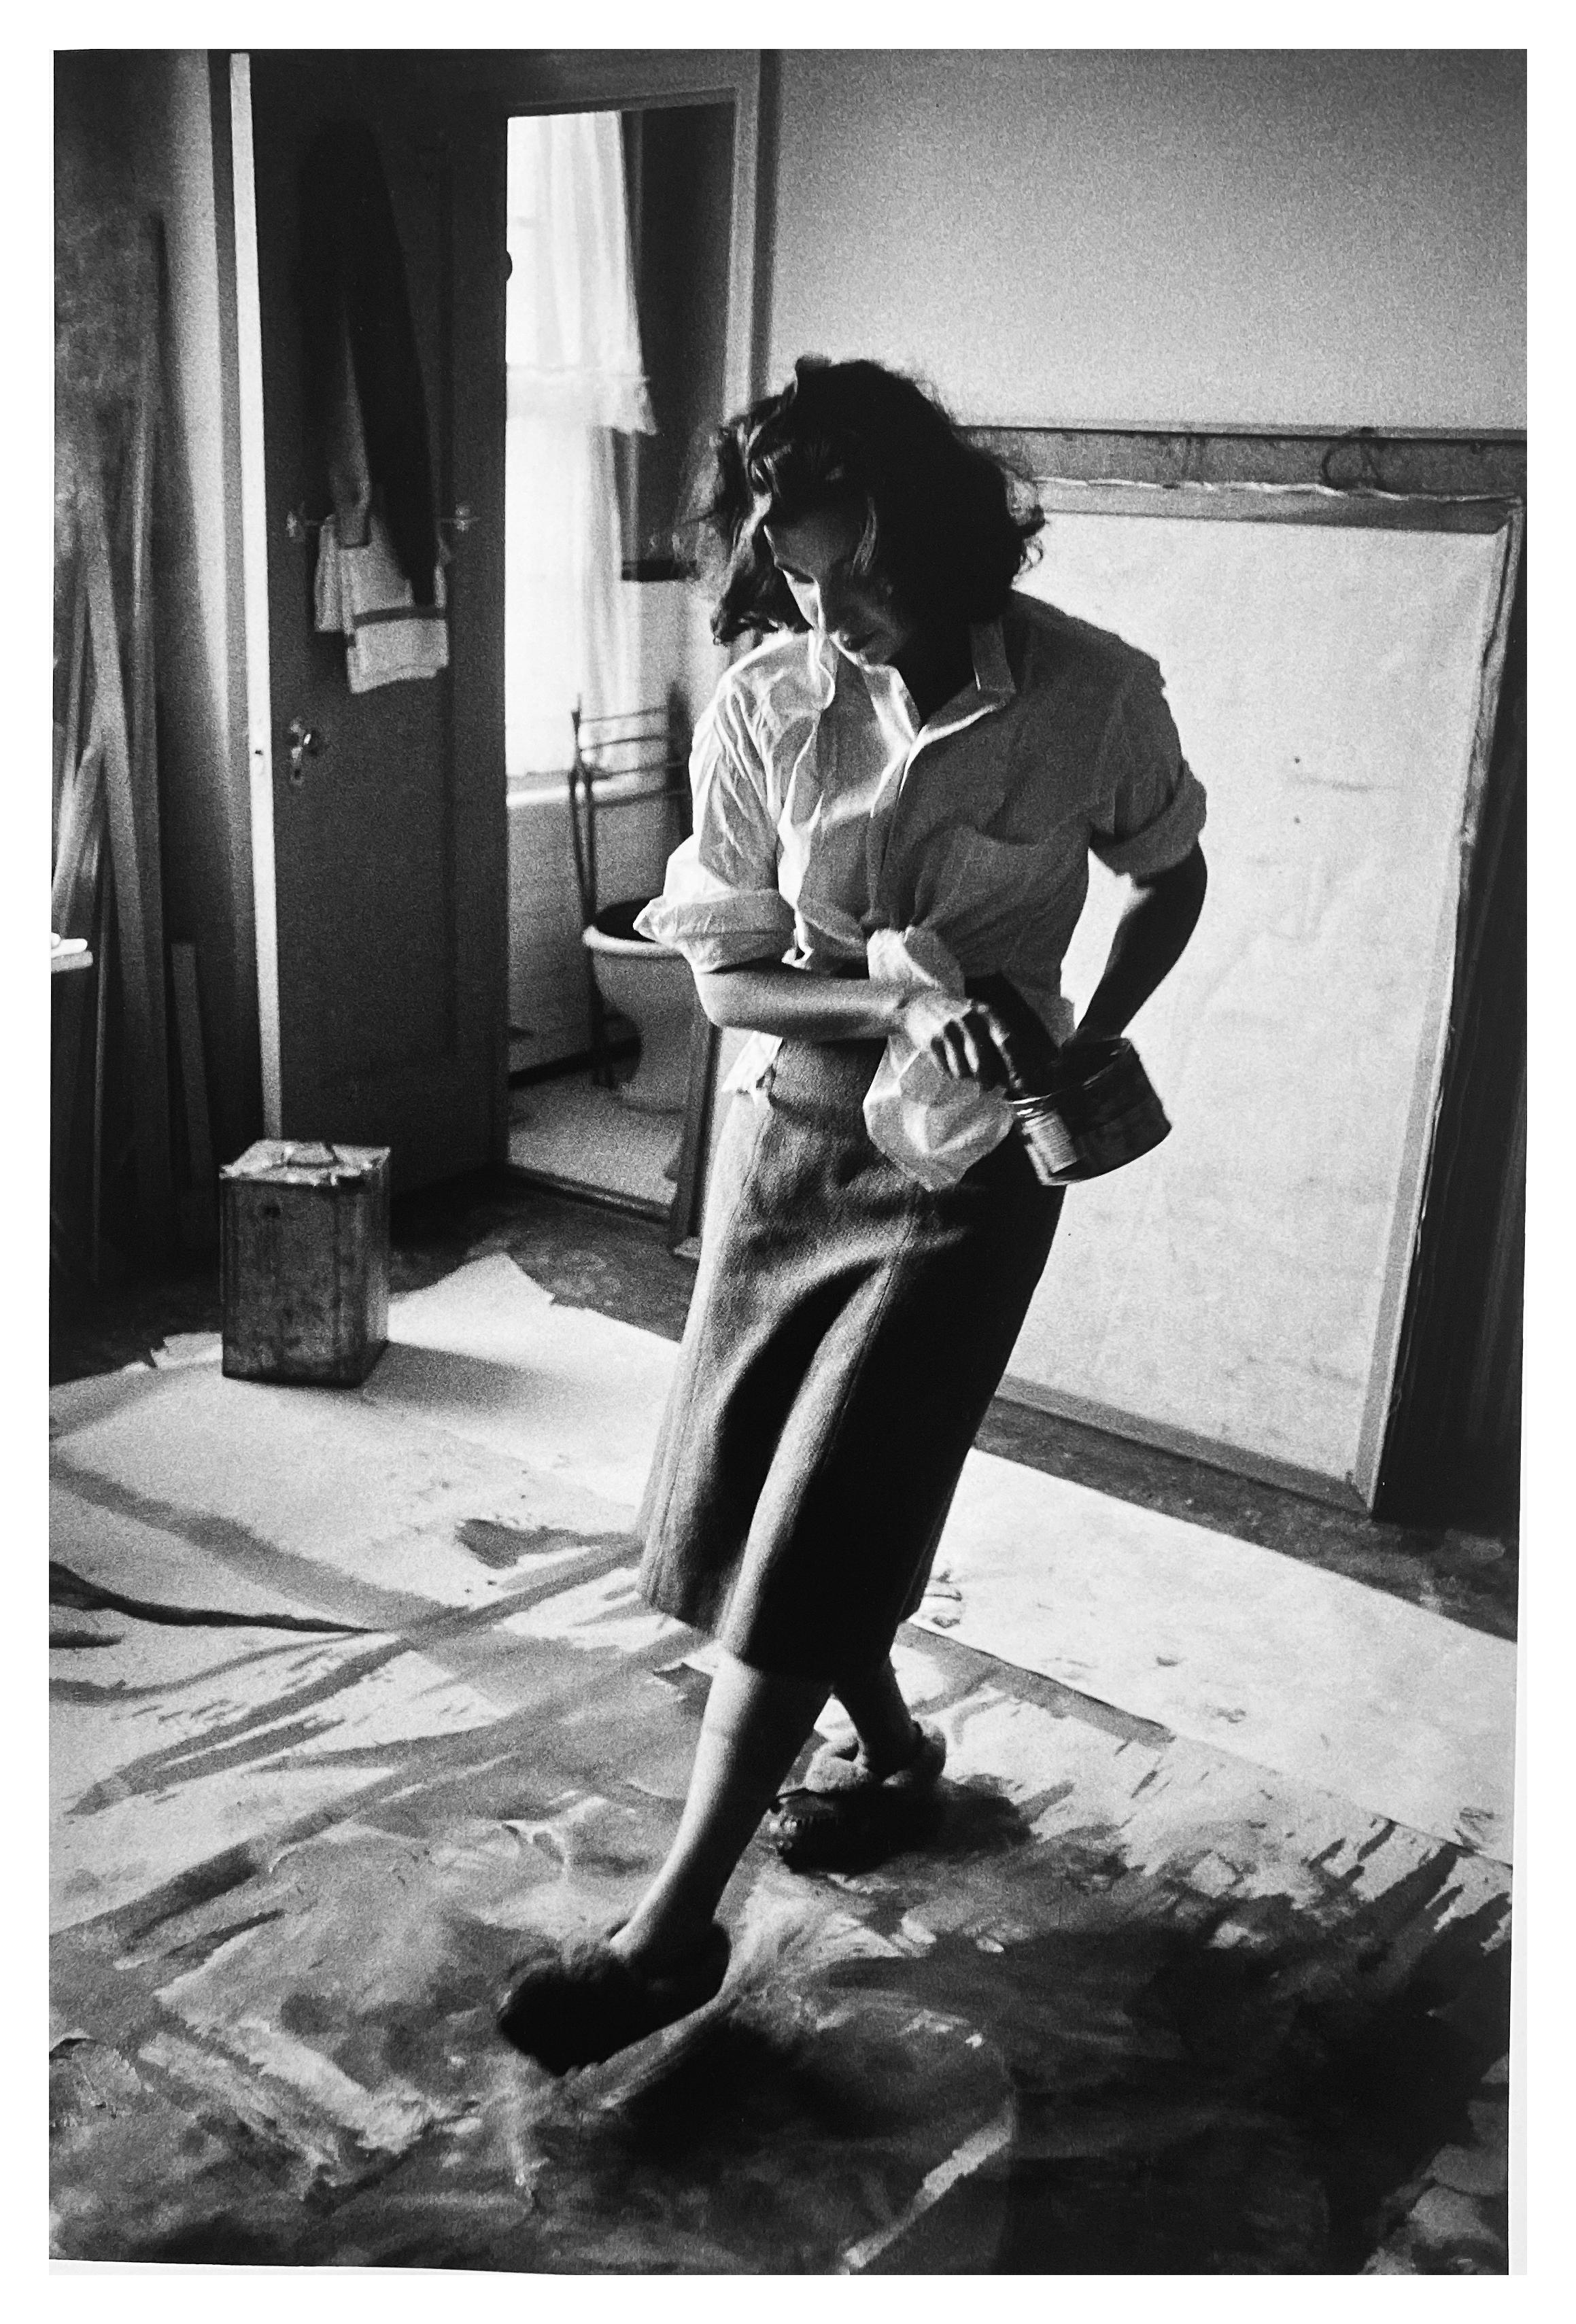 Helen Frankenthaler, Painter New York City, Photograph of Woman Artist in 1950s